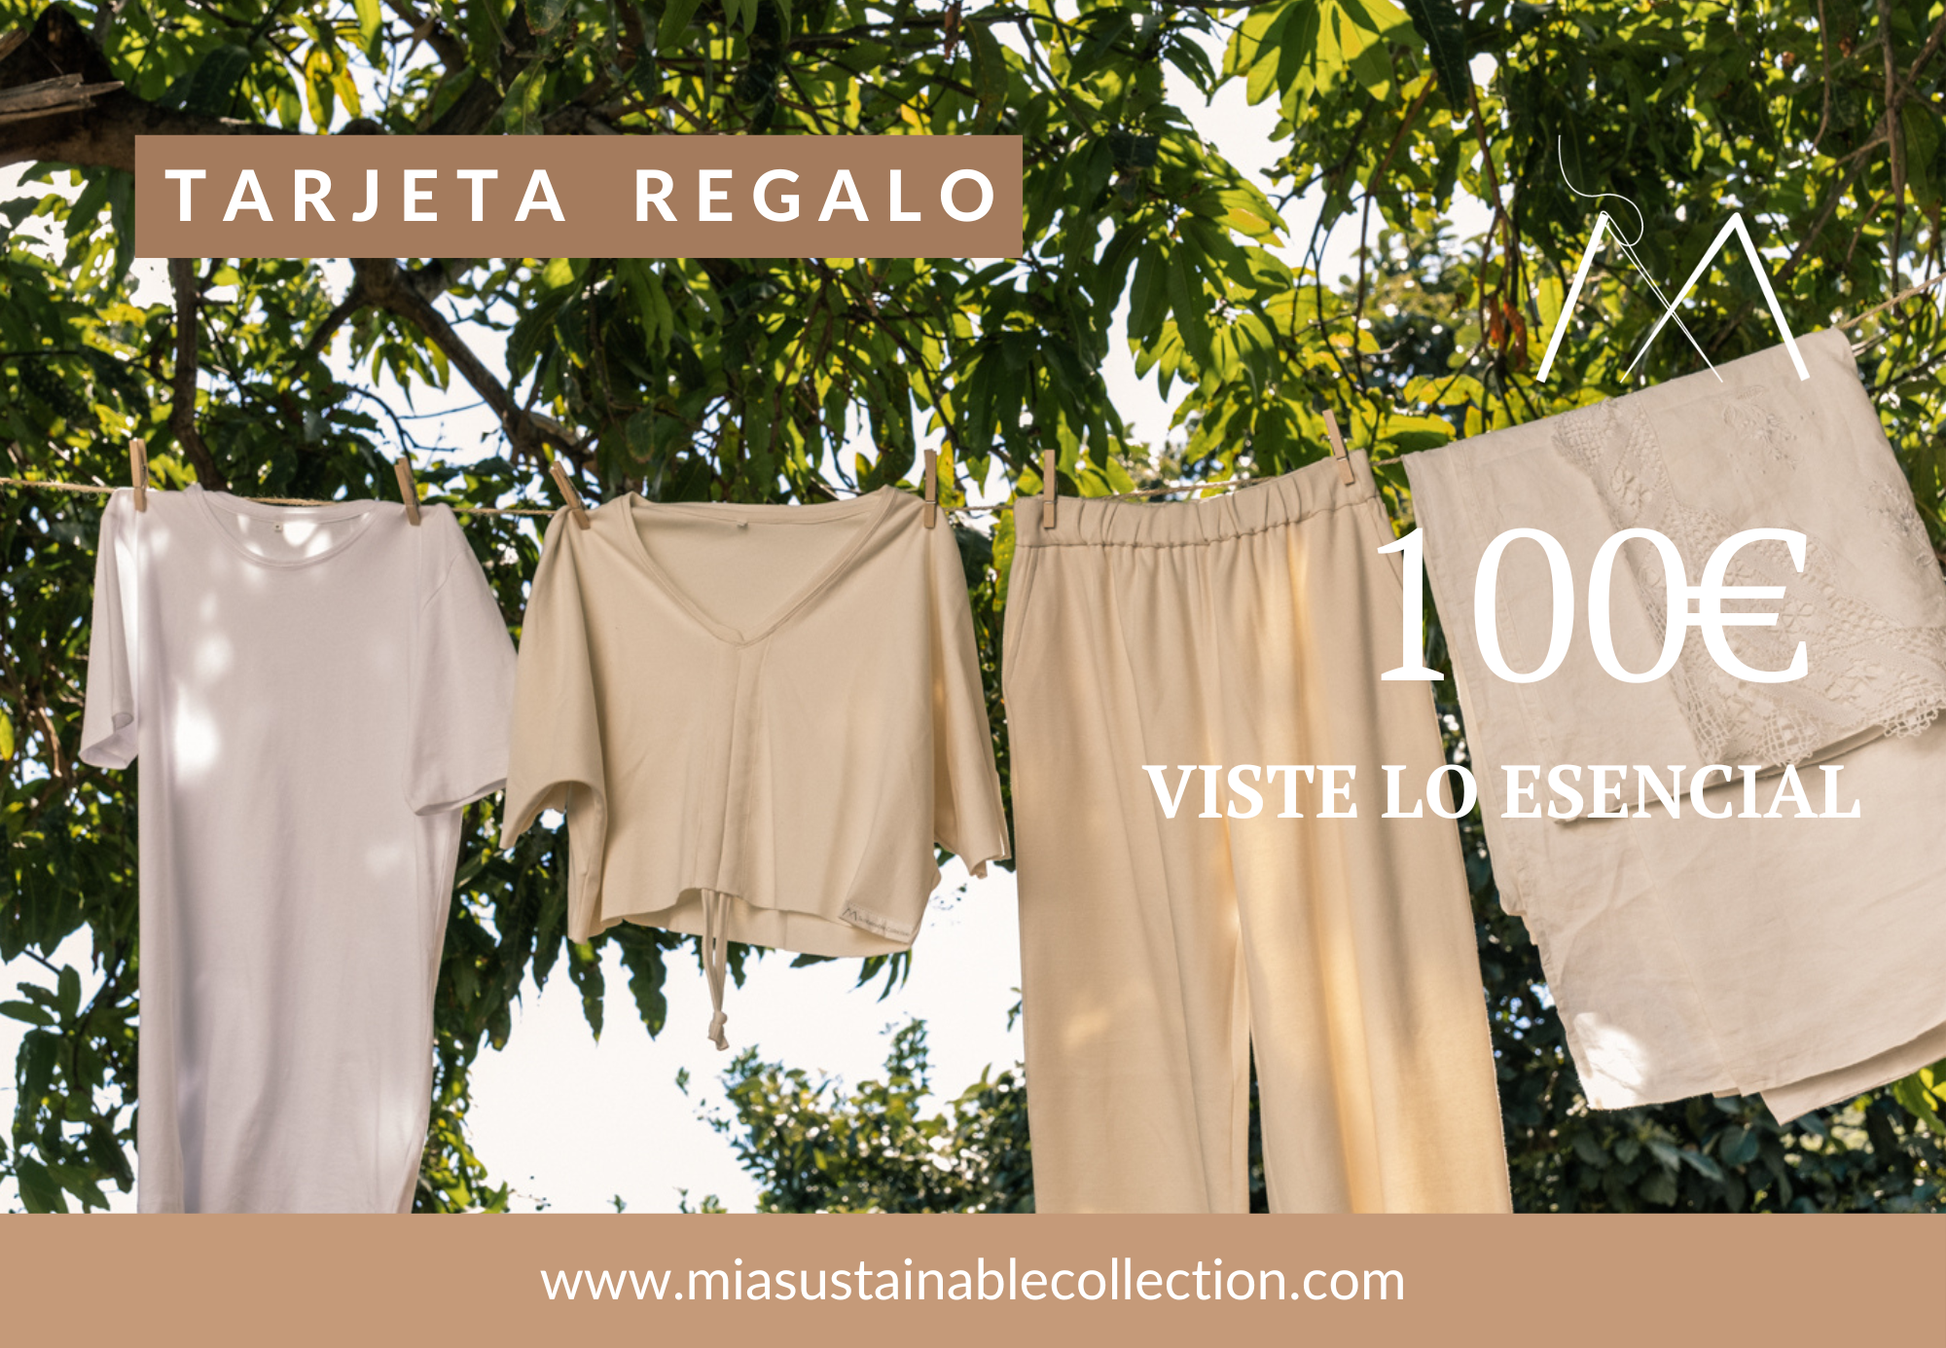 MIA Sustainable Collection Tarjeta de regalo 100 / On-line Tarjeta Regalo